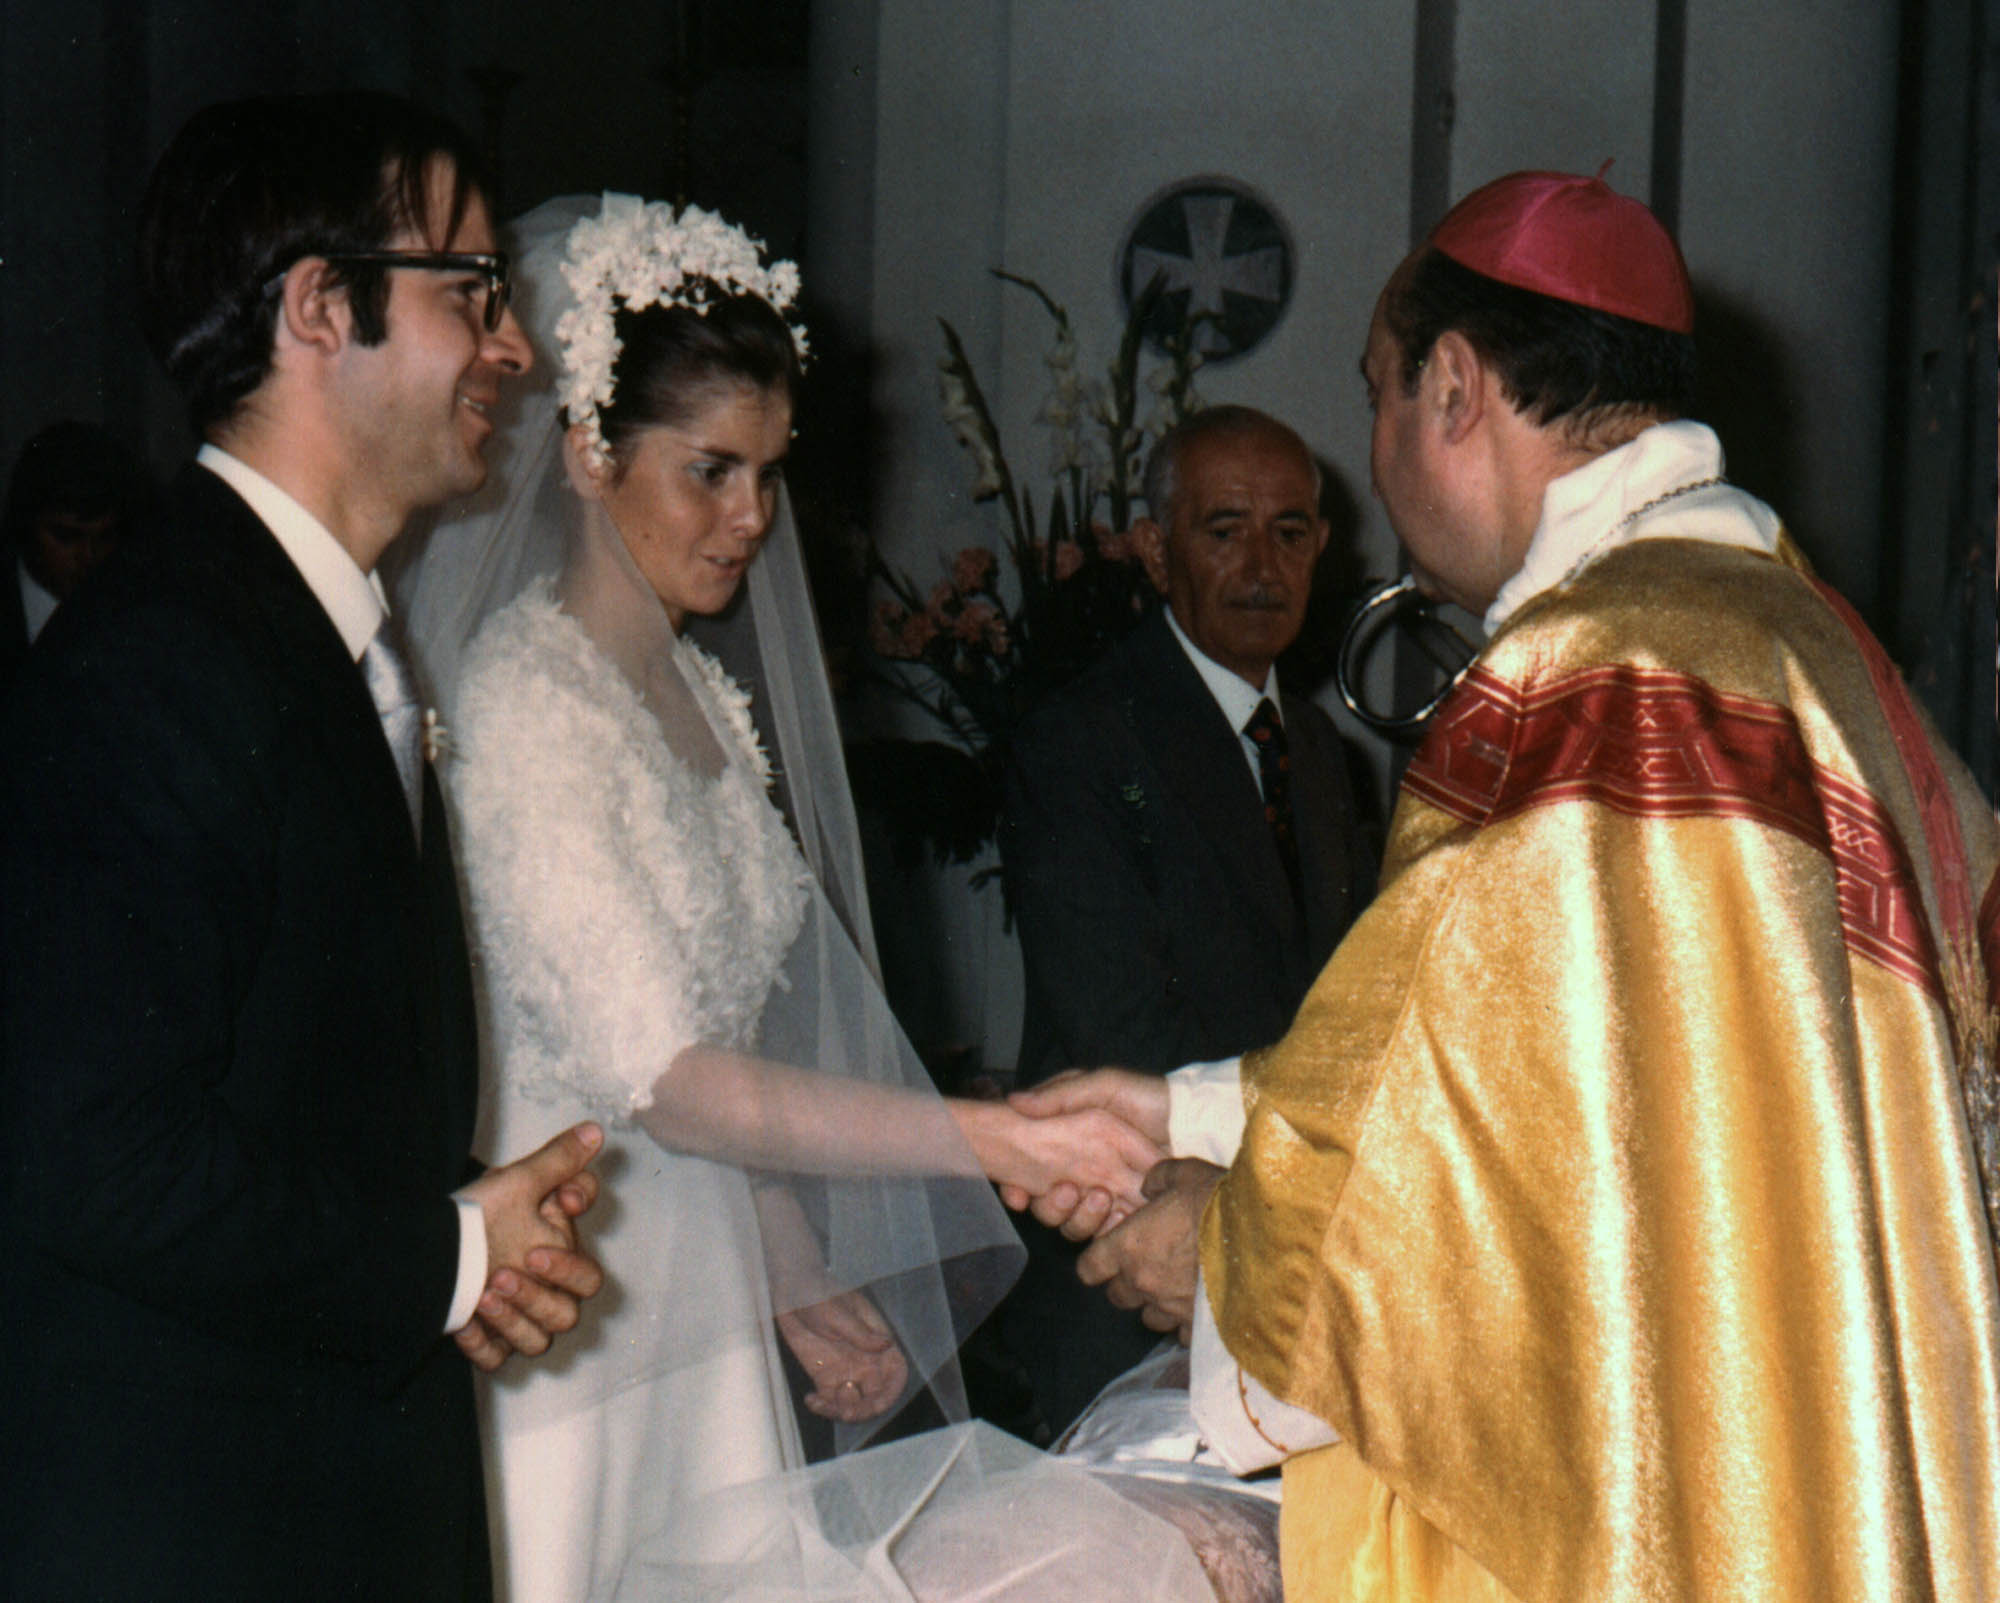 Le nostre nozze del 16/09/1972 davanti a Mons. Lanave